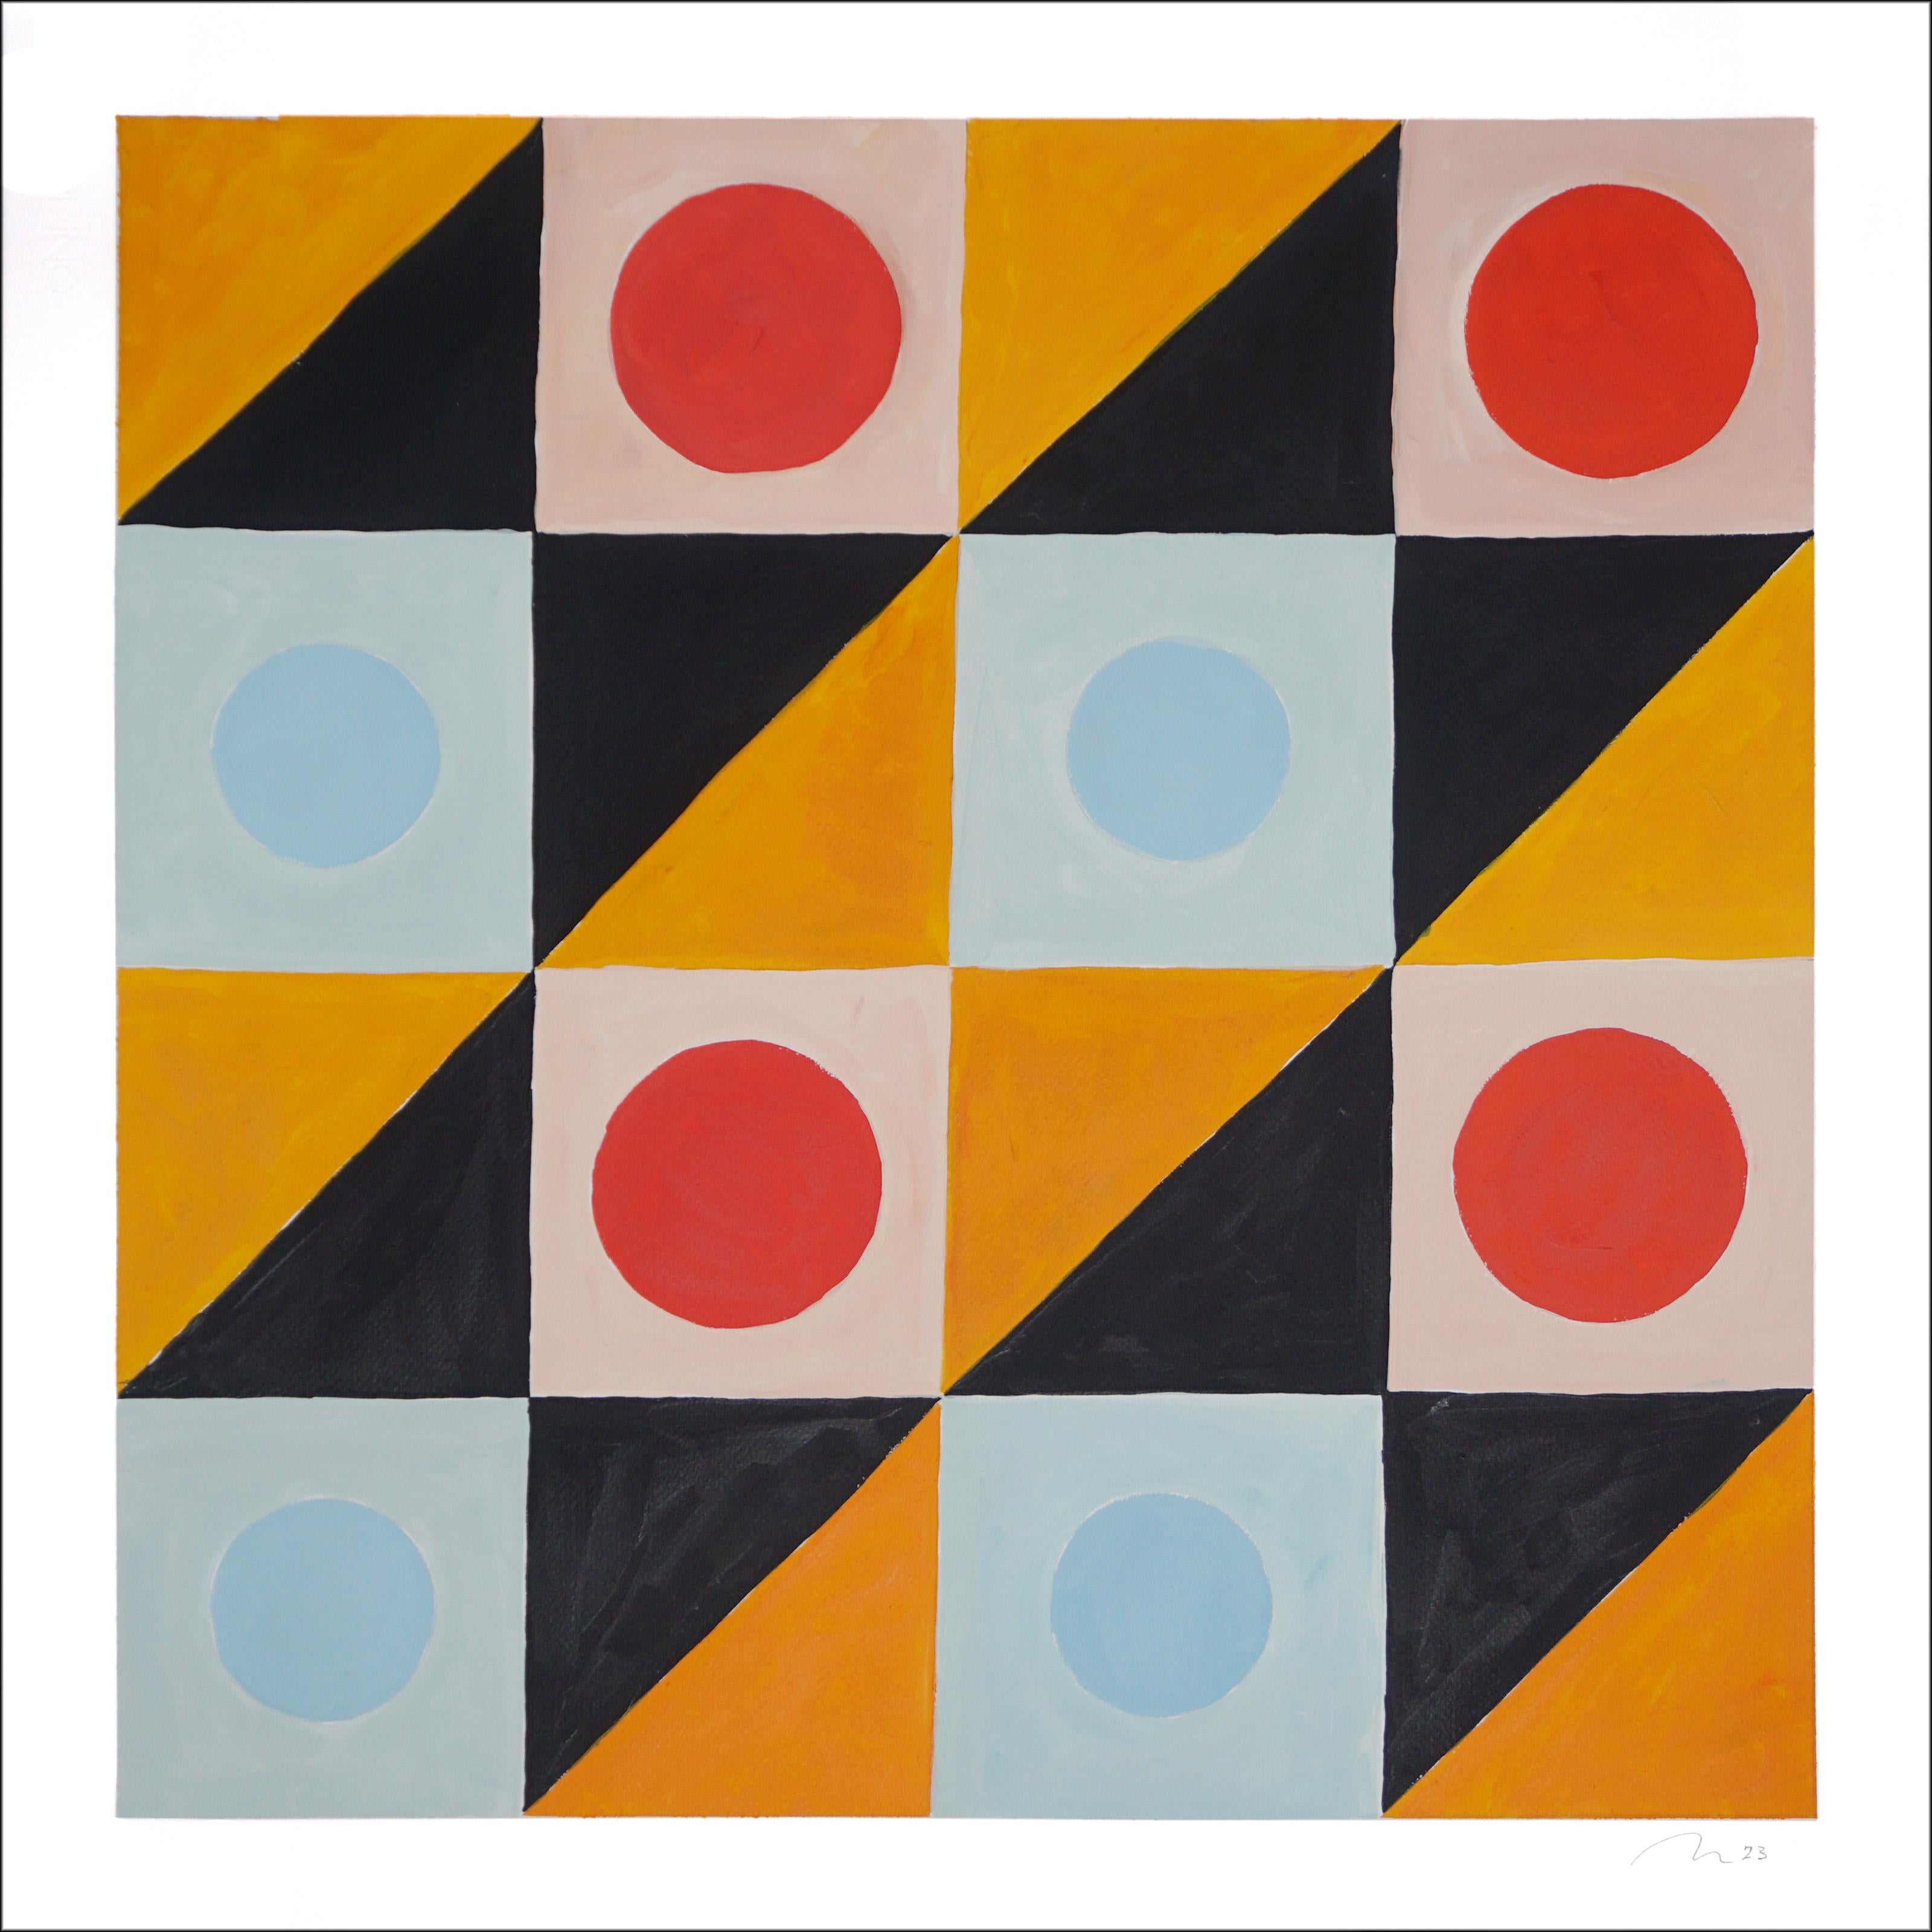 Goldener Bienenkäfig, Quadratisches Gemälde, abstraktes geometrisches Gitter, Gelb, Schwarz, Rot 